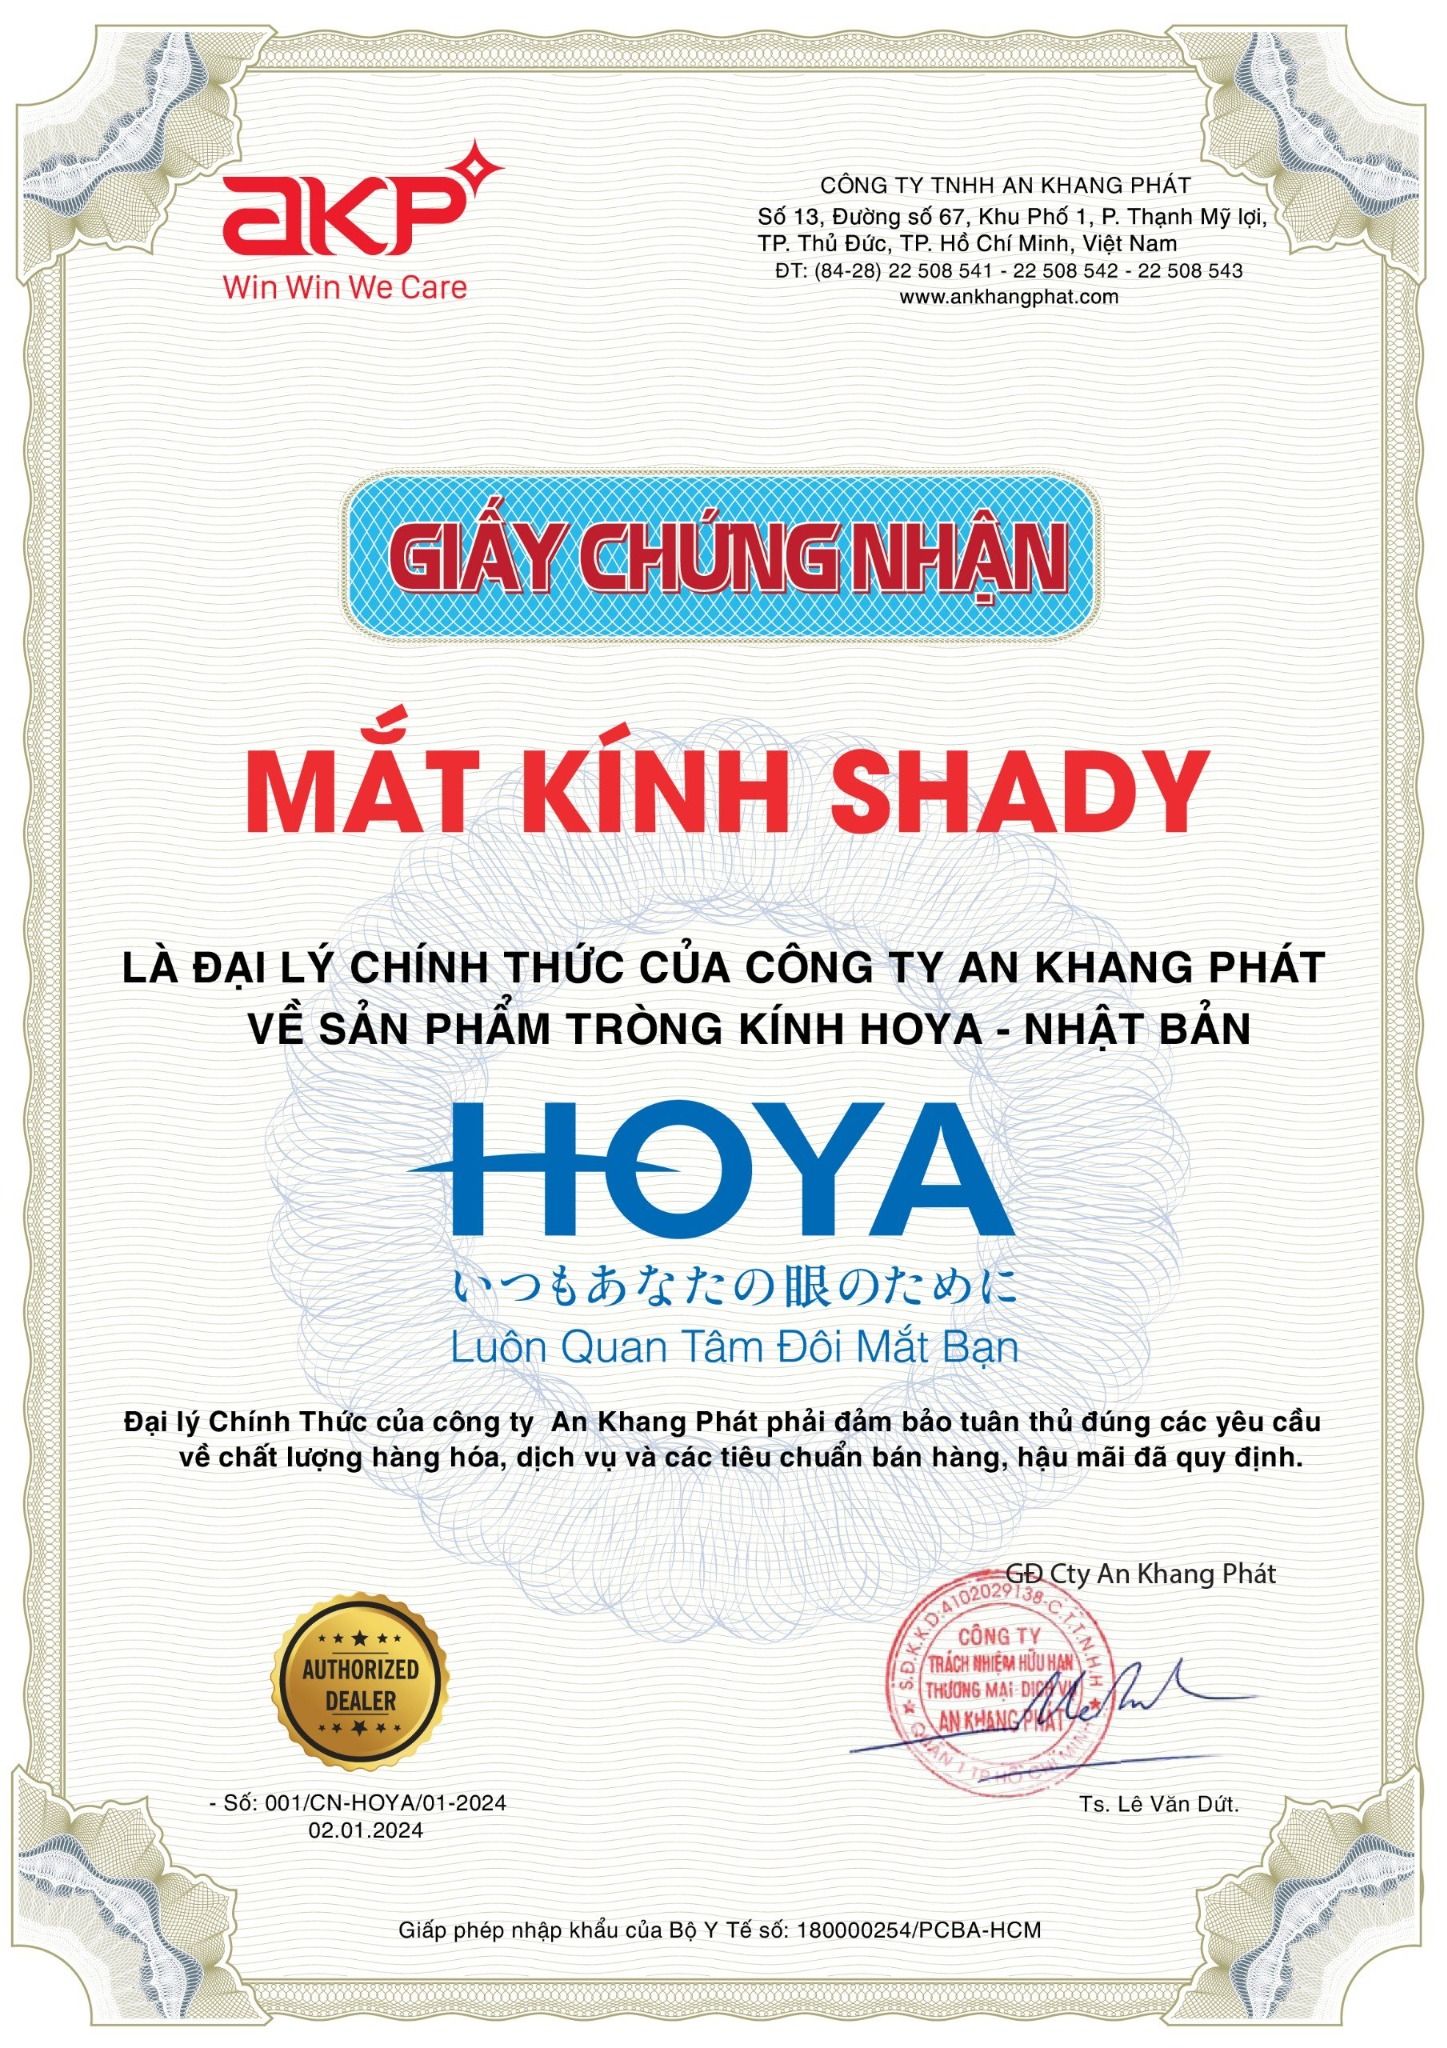  Tròng Kính Chống Chói Stellify Hoya 1.55 